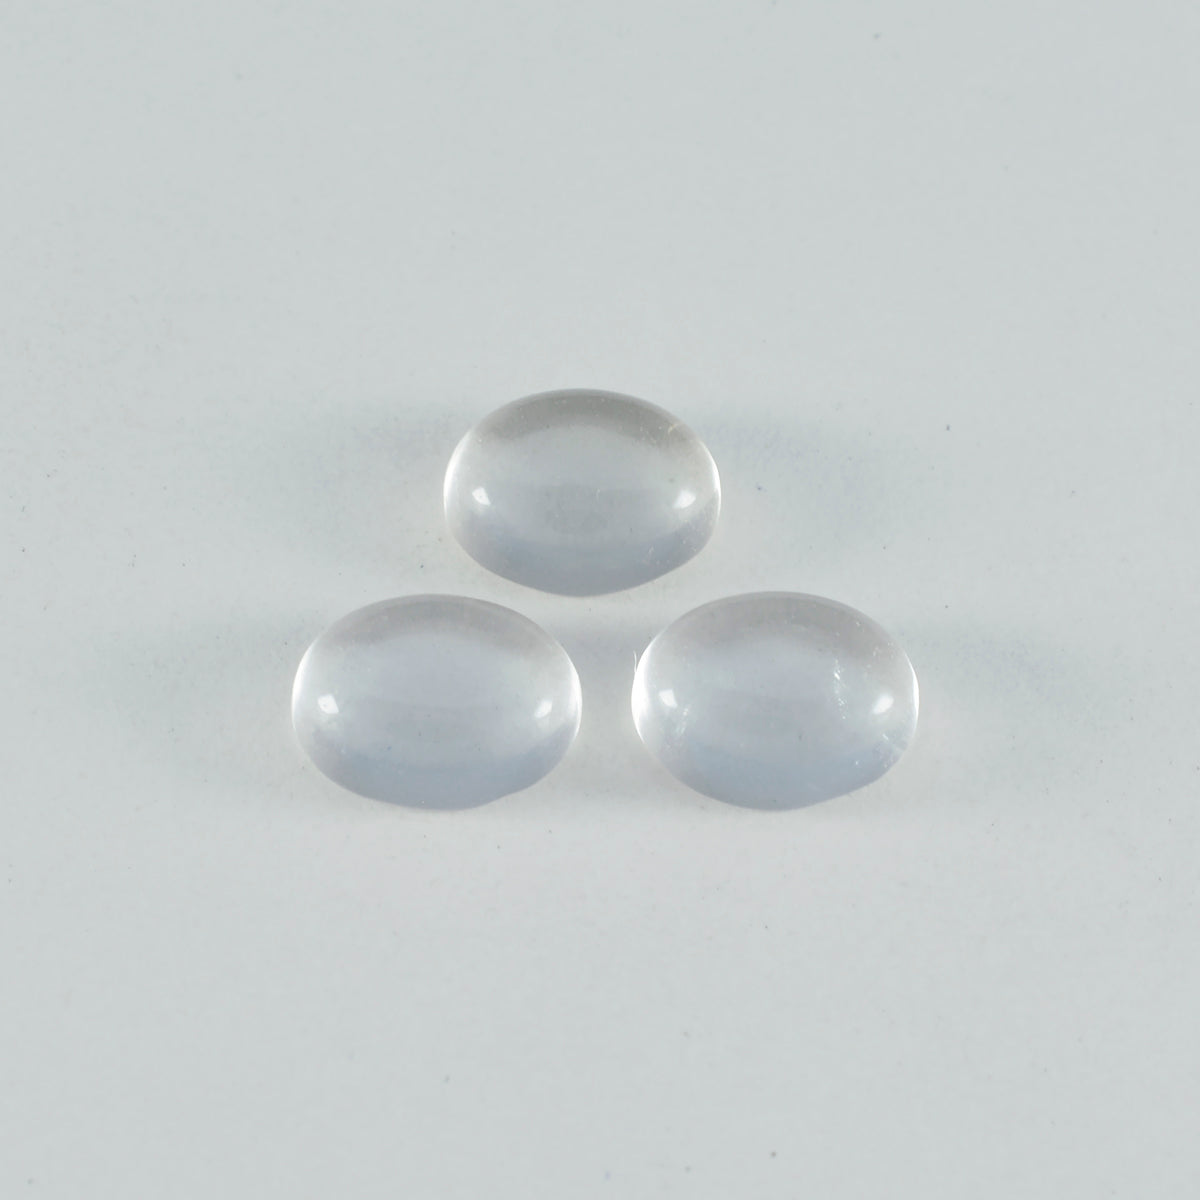 Riyogems 1PC witte kristalkwarts cabochon 10x12 mm ovale vorm fantastische kwaliteitsedelsteen